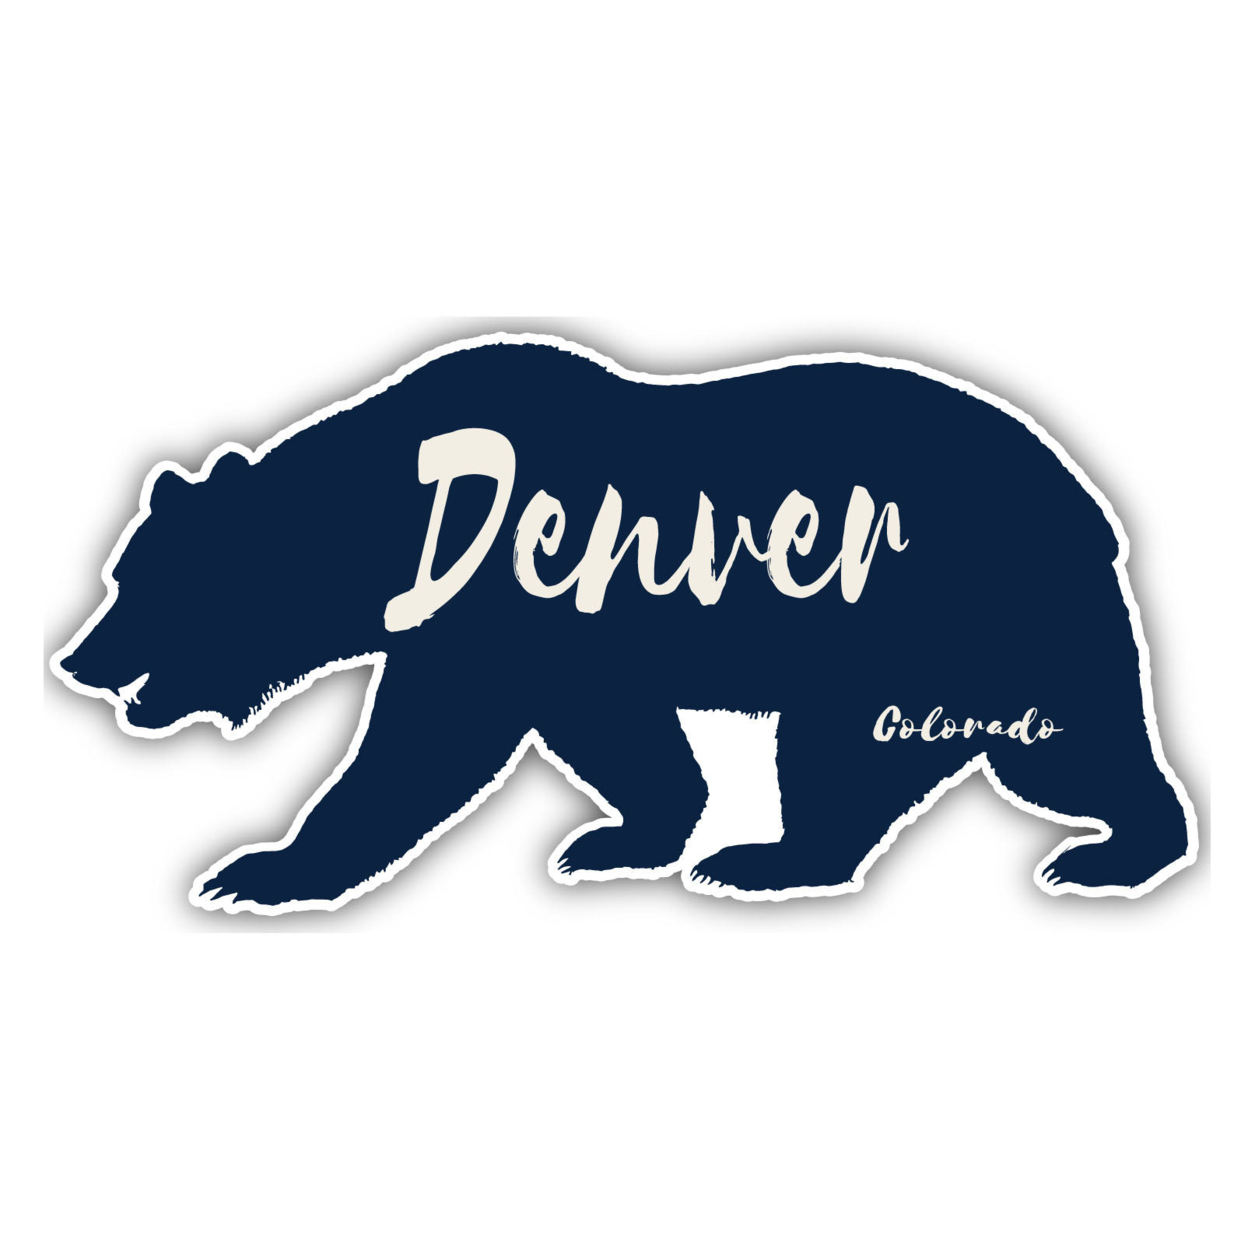 Denver Colorado Souvenir Decorative Stickers (Choose Theme And Size) - Single Unit, 8-Inch, Tent